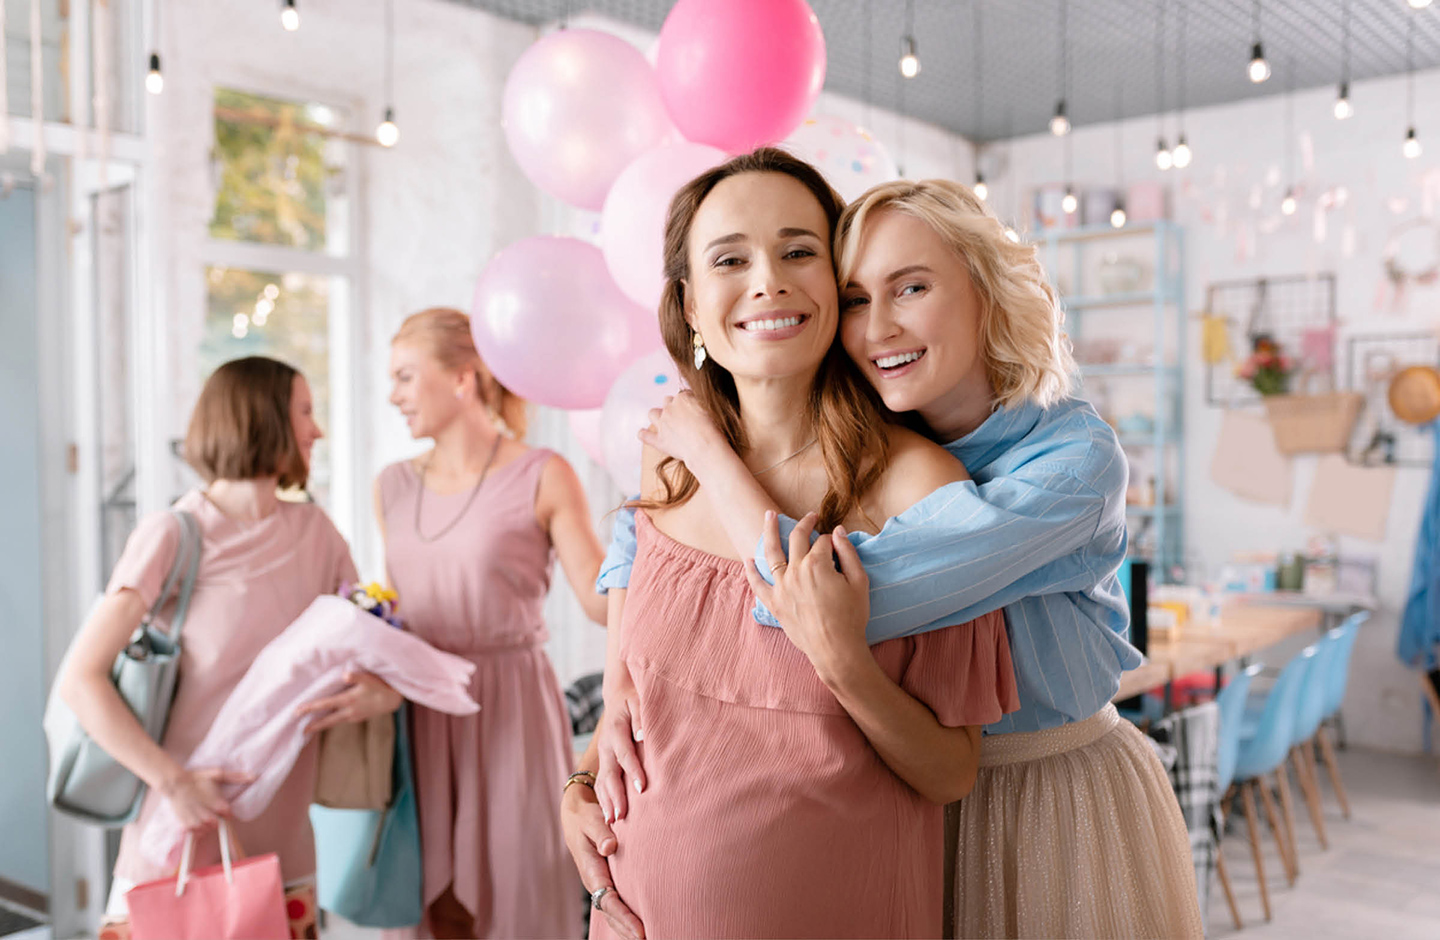 Freundinnen überraschen ihre schwangere Freundin mit einer Baby-Shower-Party in einem Restaurant